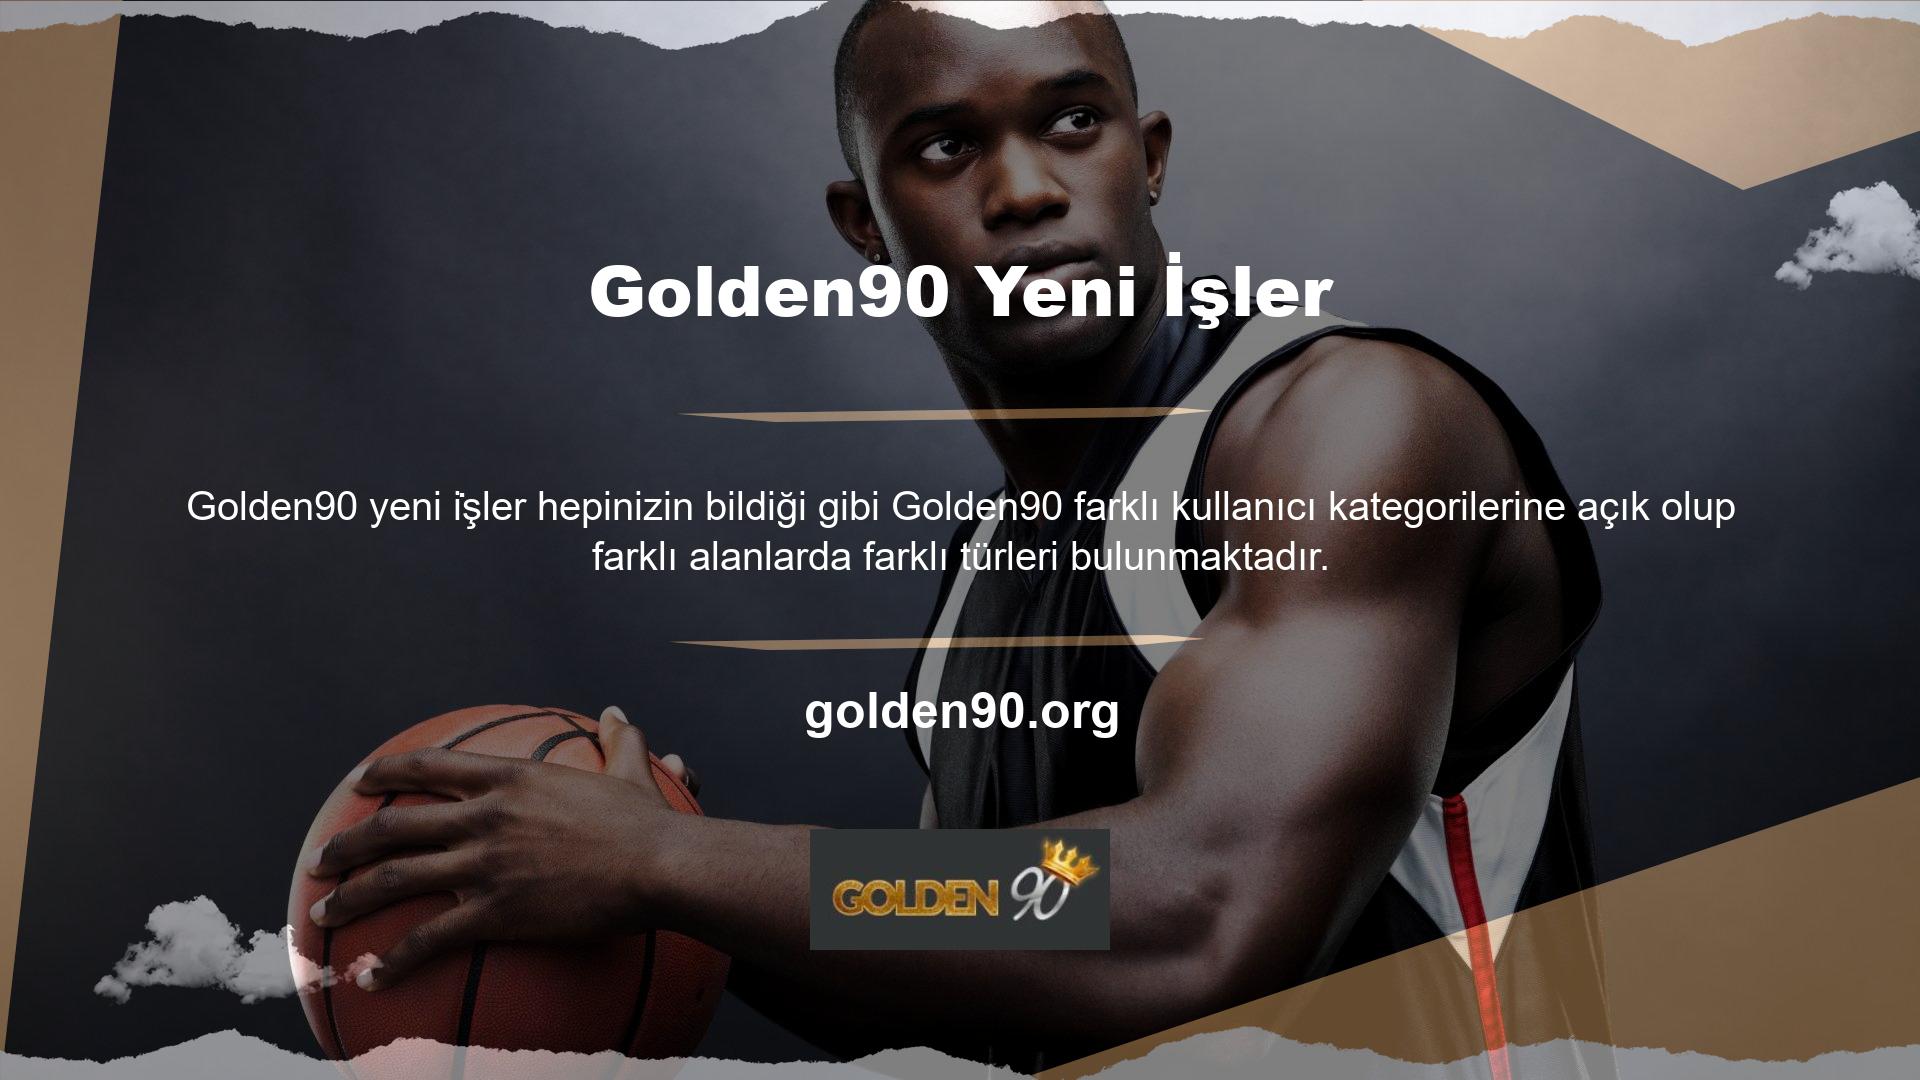 Yeni kullanıcıların popülerliği nedeniyle Golden90 sitesine üye olarak kayıt olan birçok kullanıcıya, site tarafından belirlenen ve belirlenen tutarda para yatırmadan bahis yapma hakkı verilmektedir